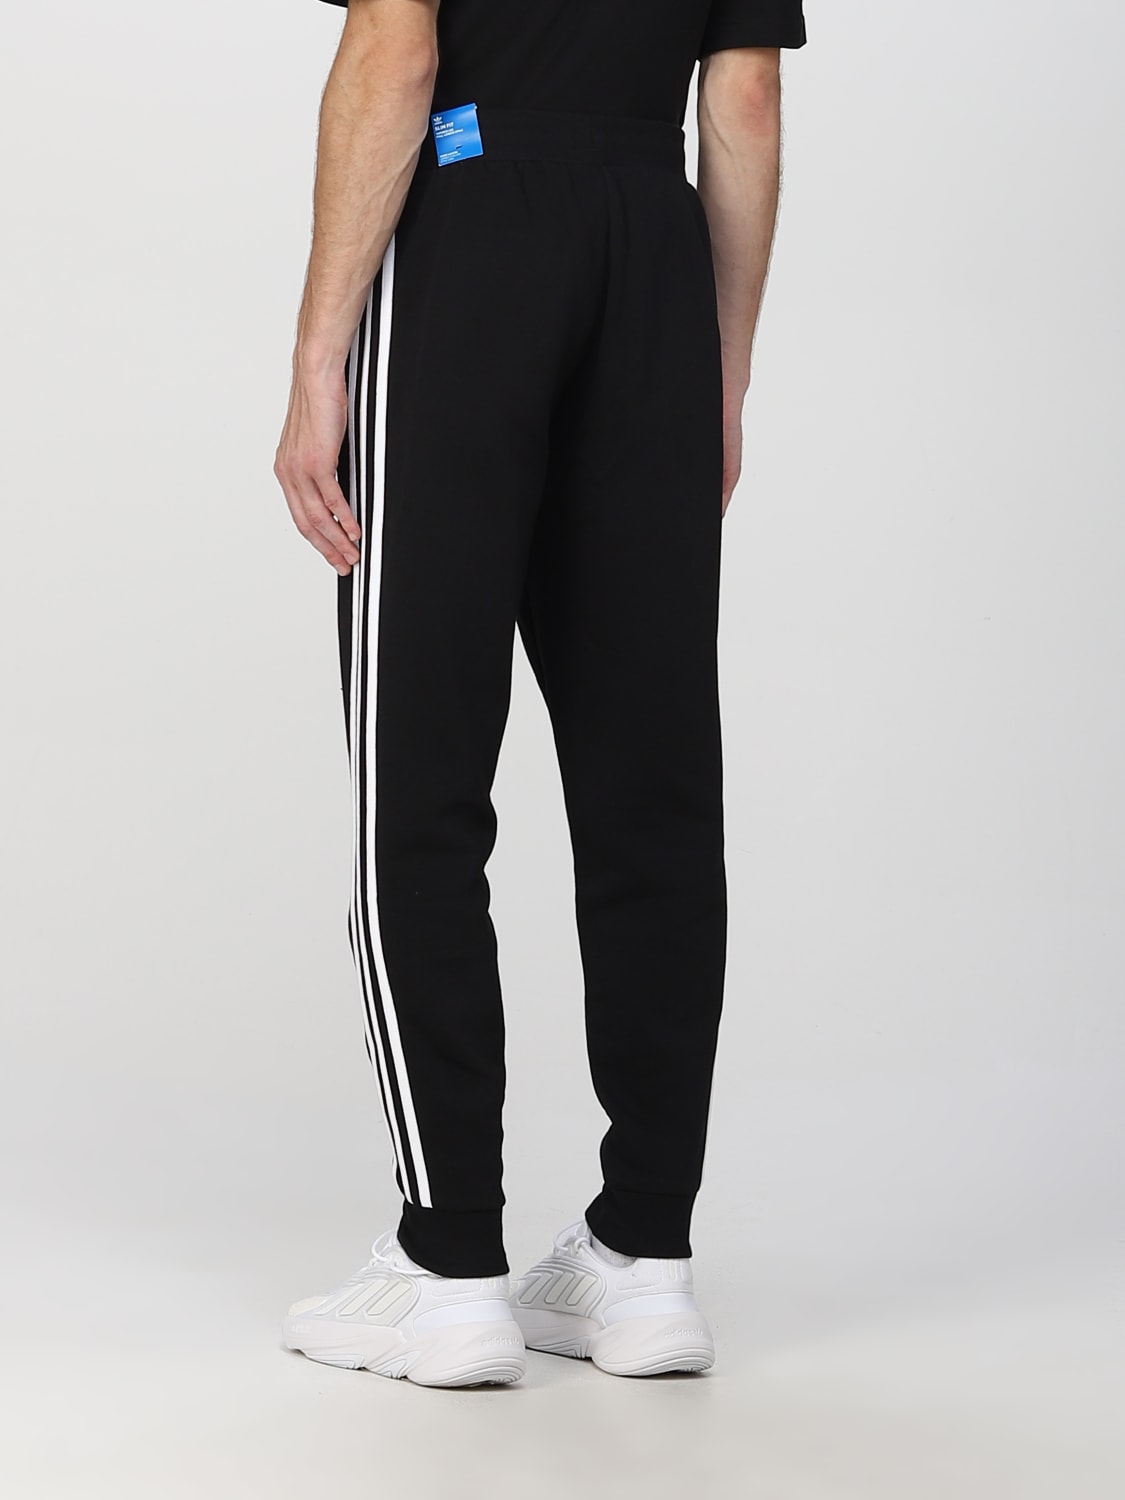 ADIDAS ORIGINALS: pants for man - Black | Adidas Originals pants GN3458 ...